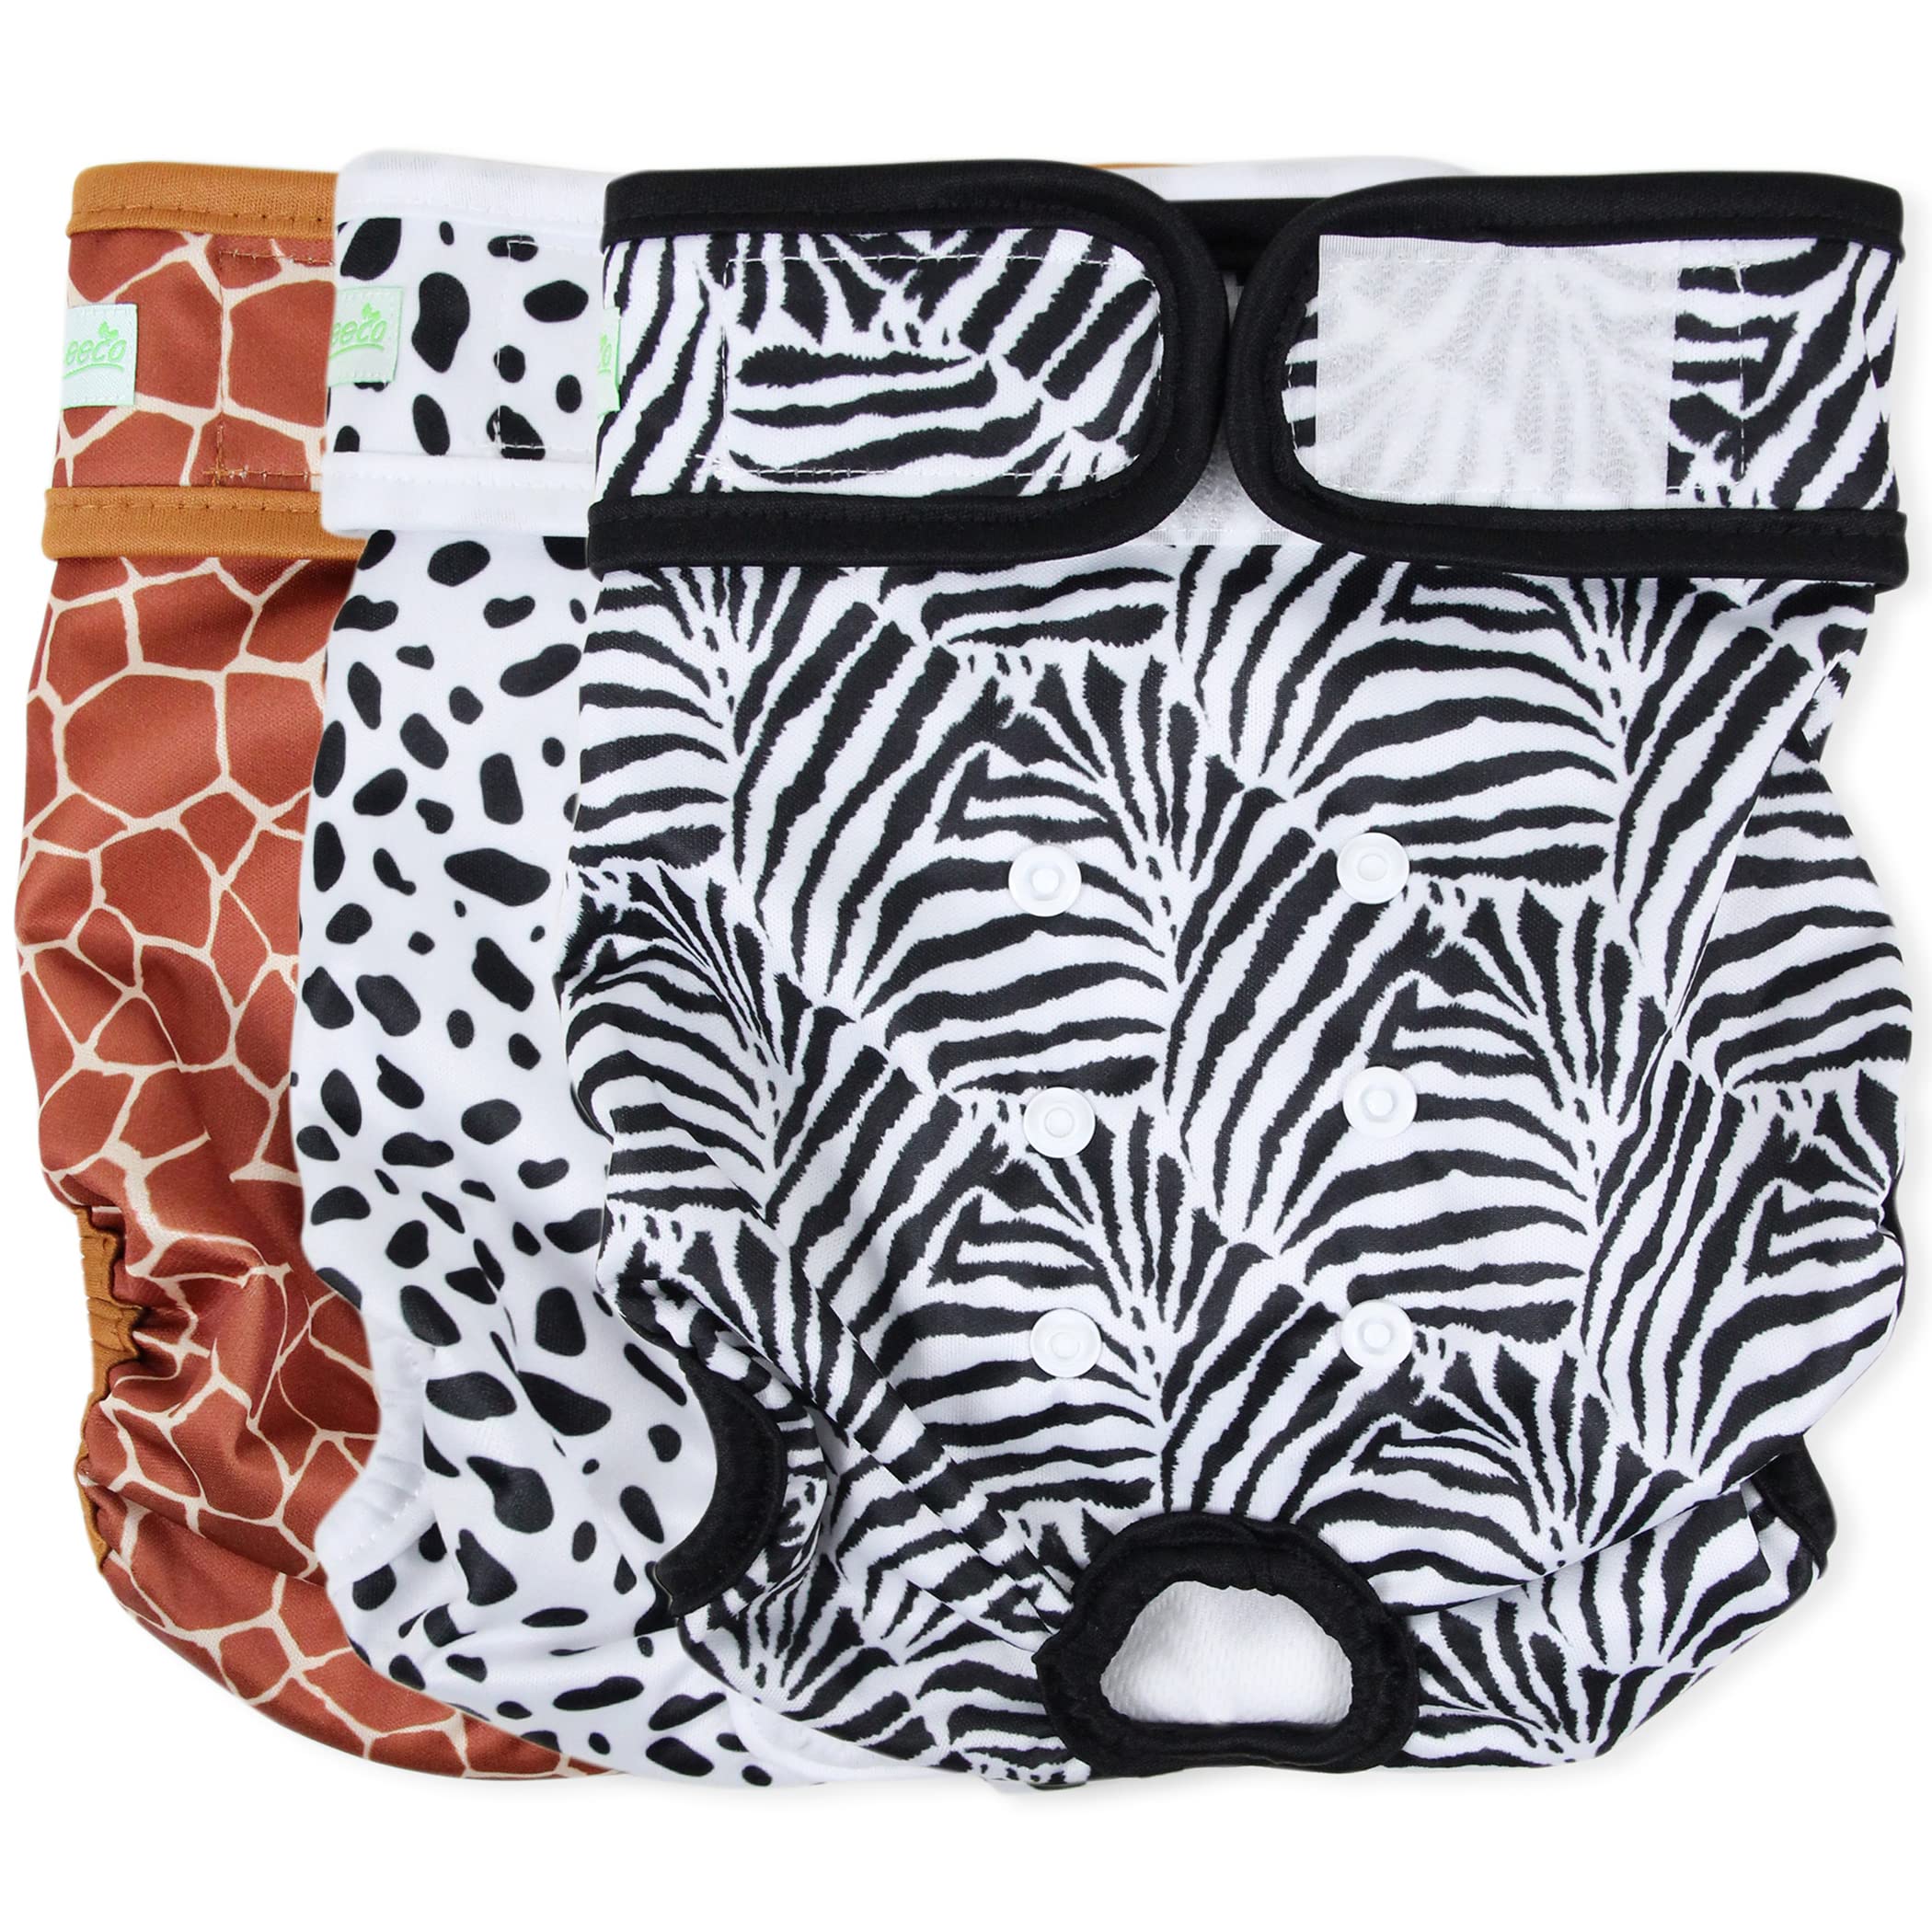 Female Dog Diapers, 3-Pack (Zebra, Giraffe, Spotty)